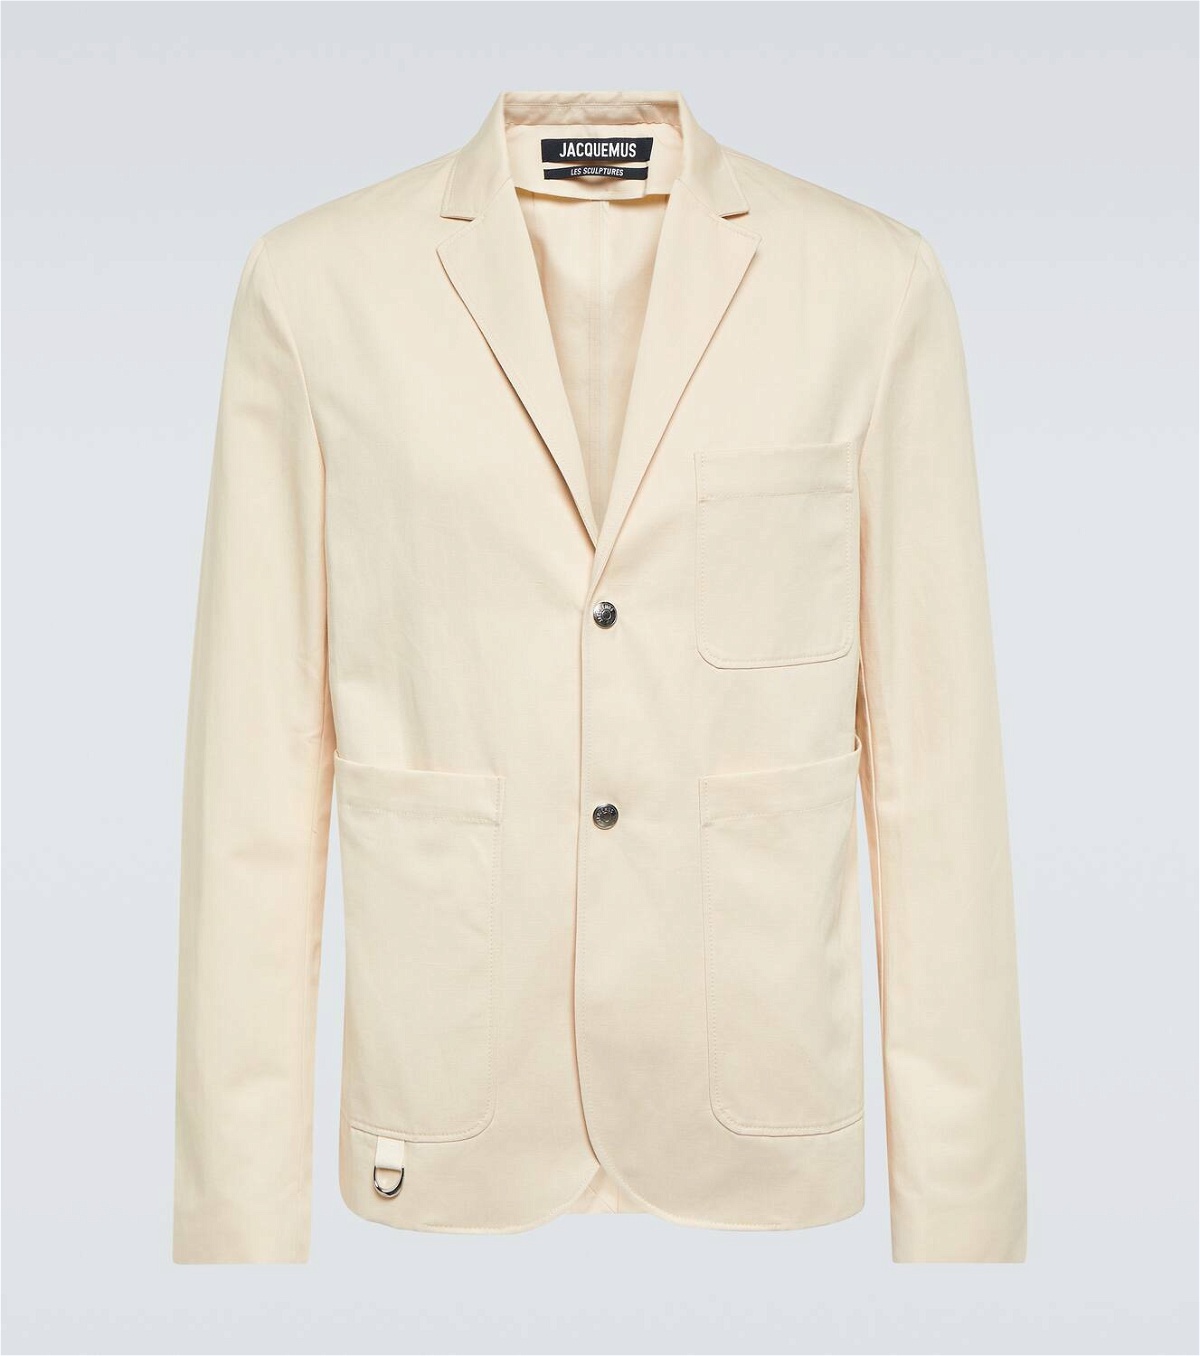 Jacquemus La veste Jean cotton and linen blazer